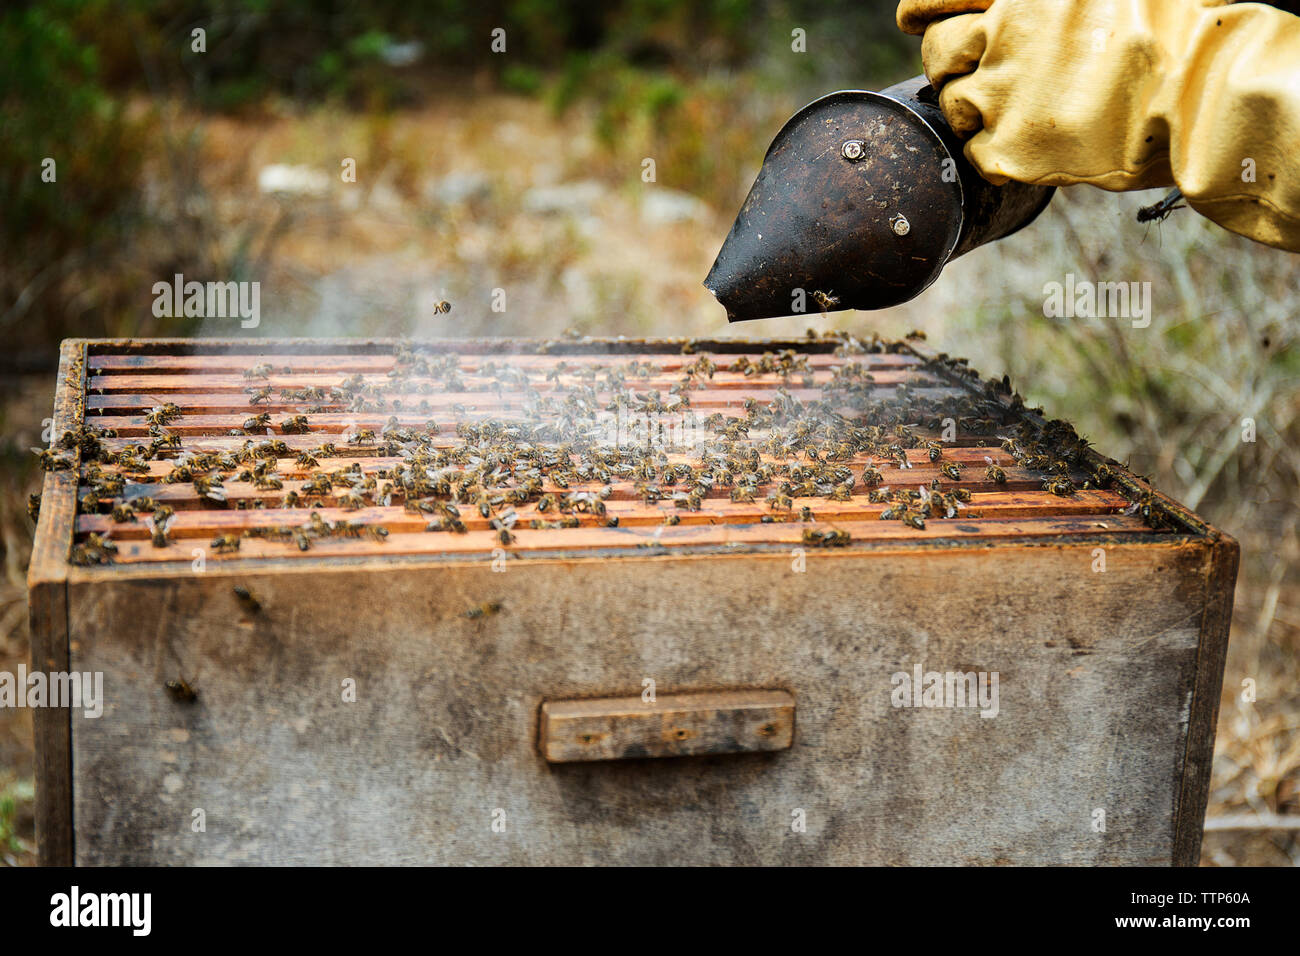 Dégagement de fumée dans l'apiculteur ruche en bois Banque D'Images